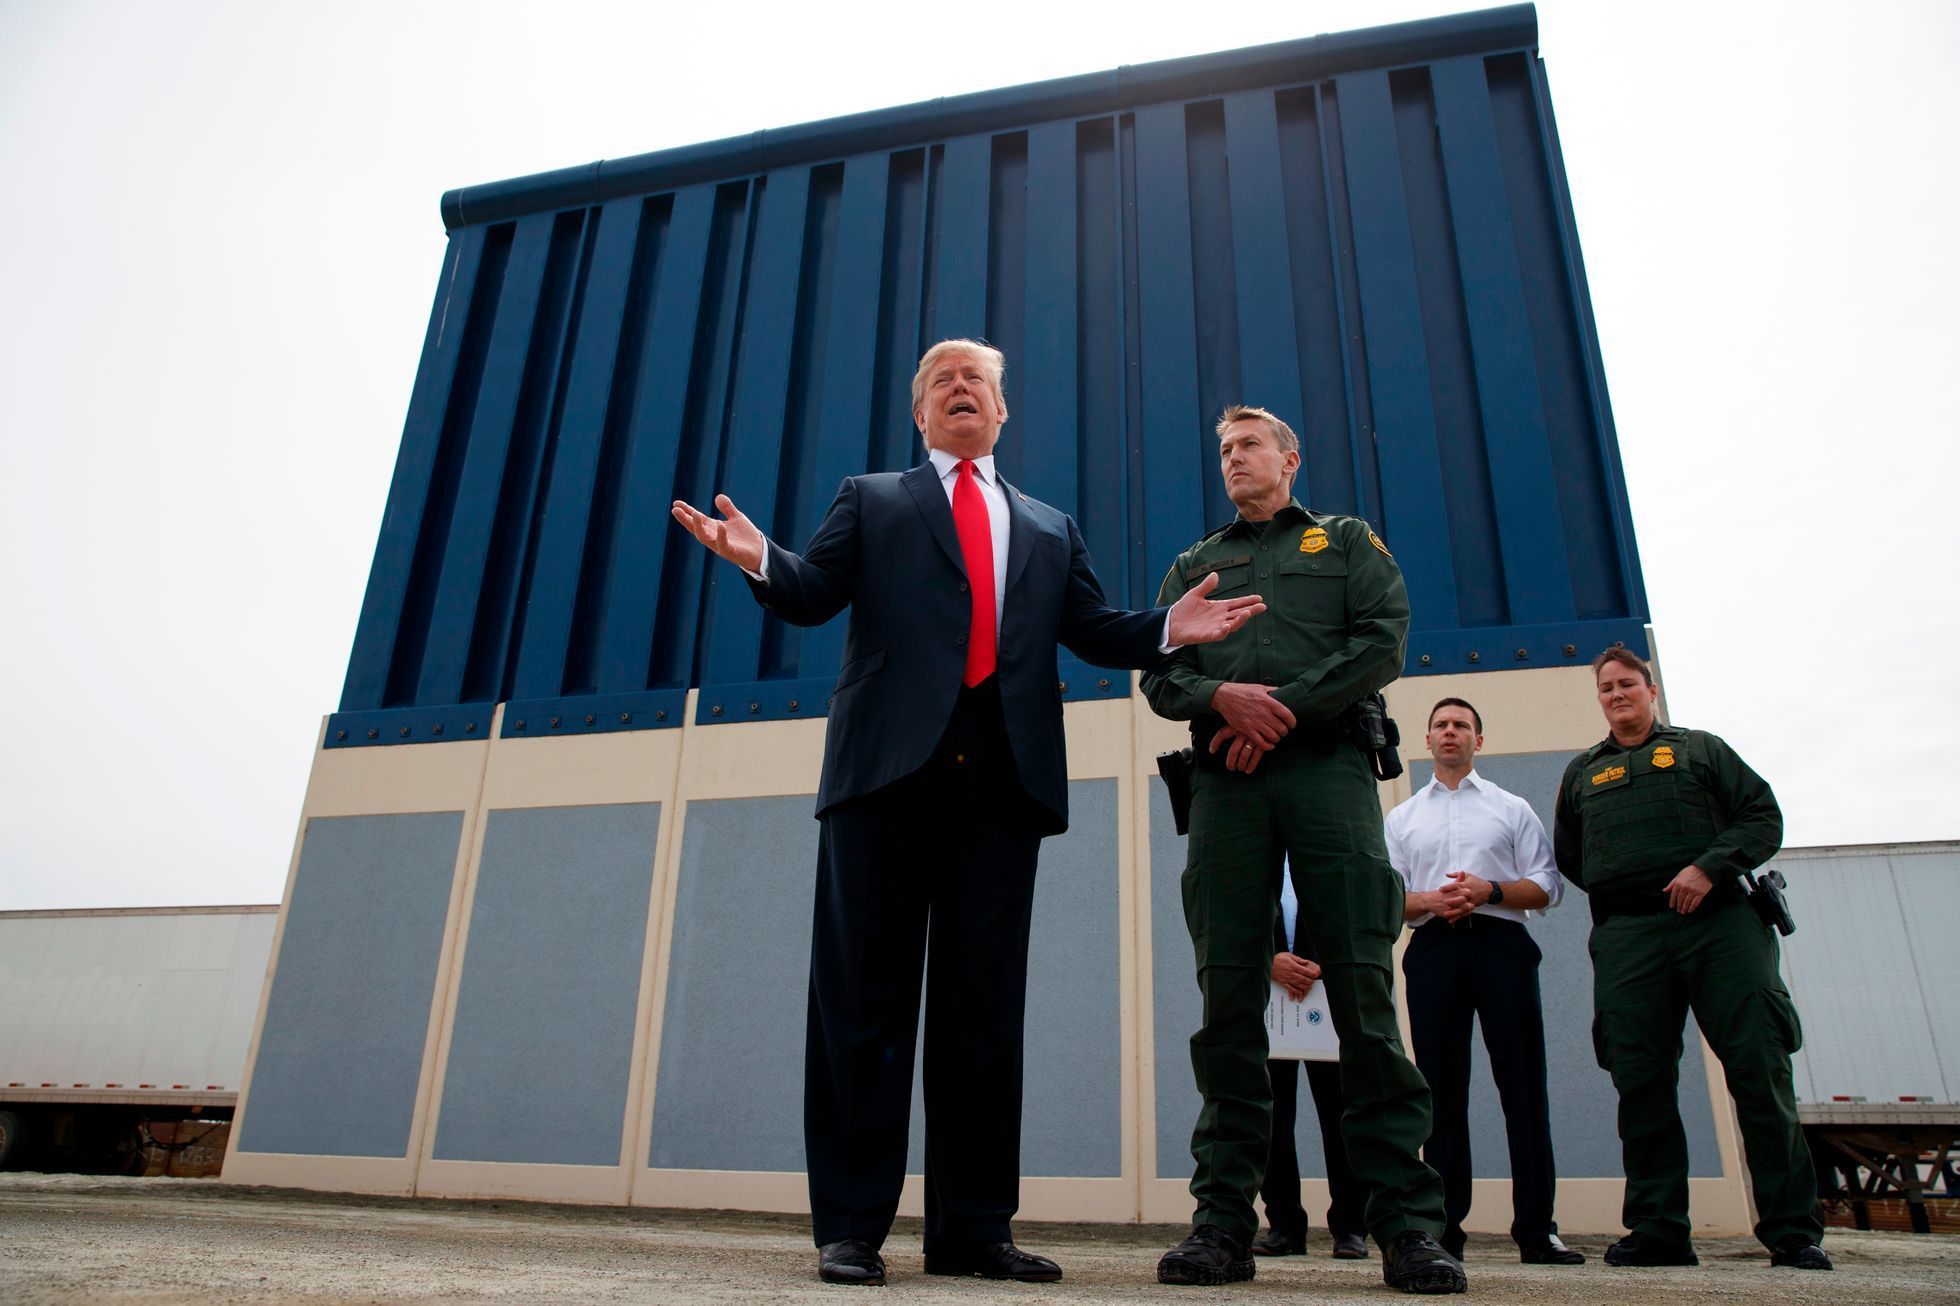 Snímek z března 2018, kdy si Donald Trump byl prohlédnout návrhy jeho "zdi" s Mexikem.